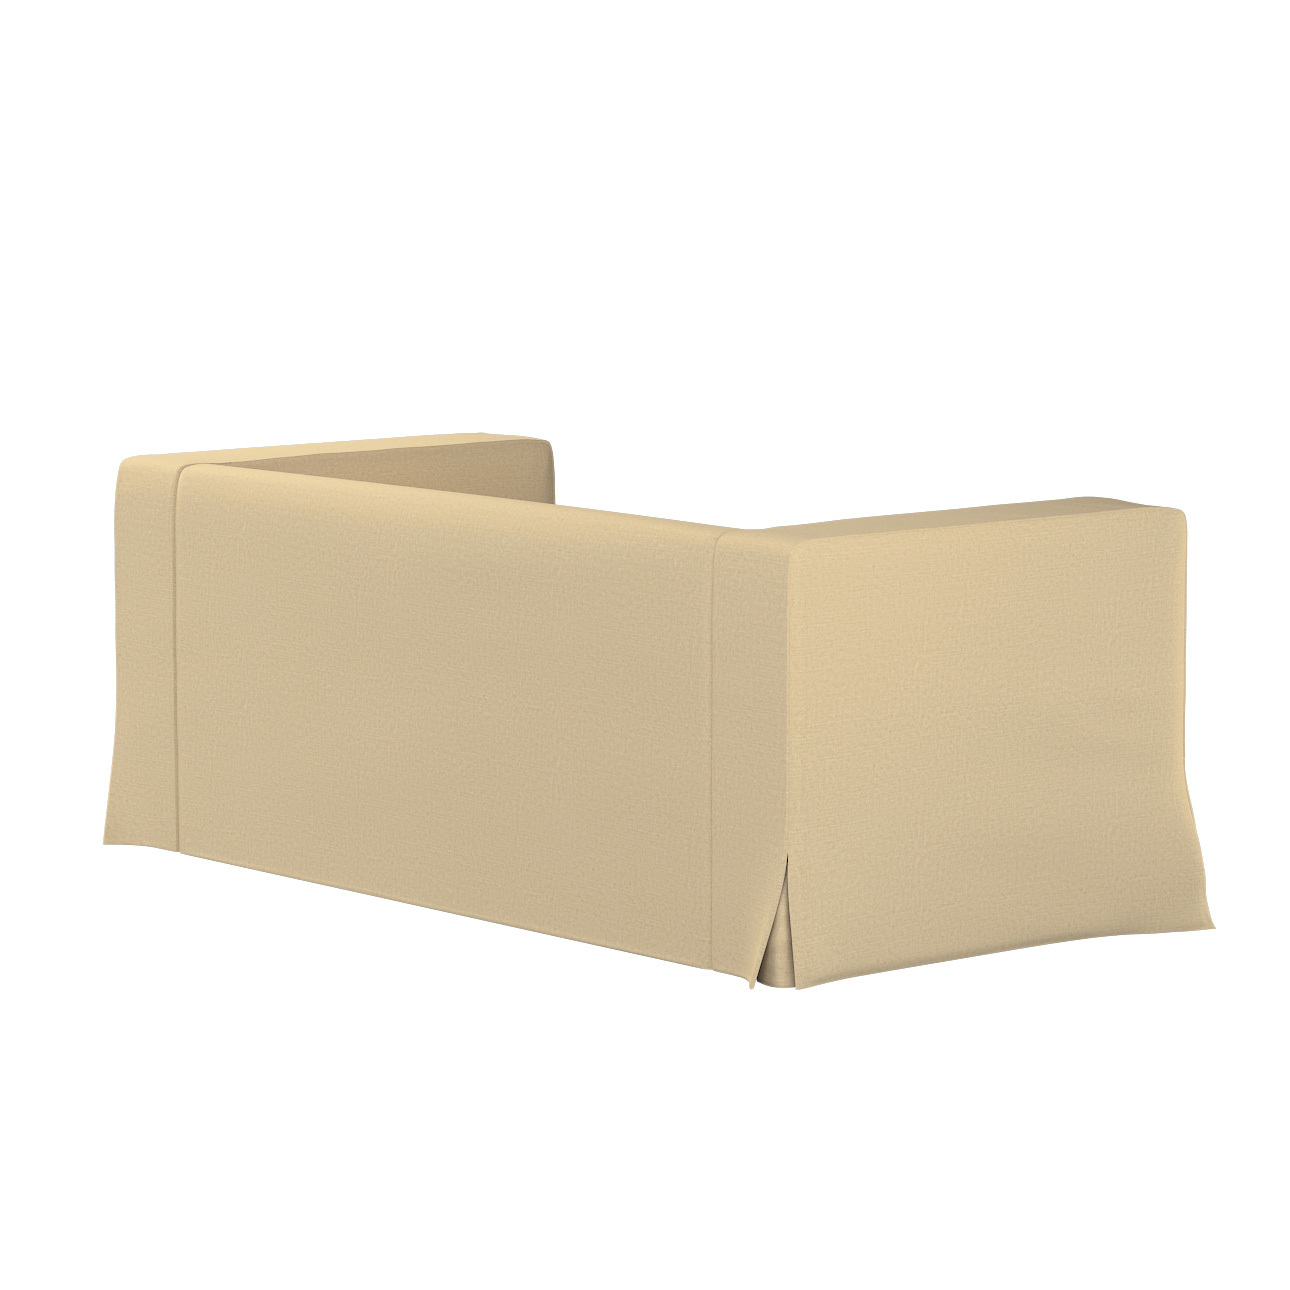 Bezug für Klippan 2-Sitzer Sofa, lang mit Kellerfalte, sandfarben, Klippan günstig online kaufen